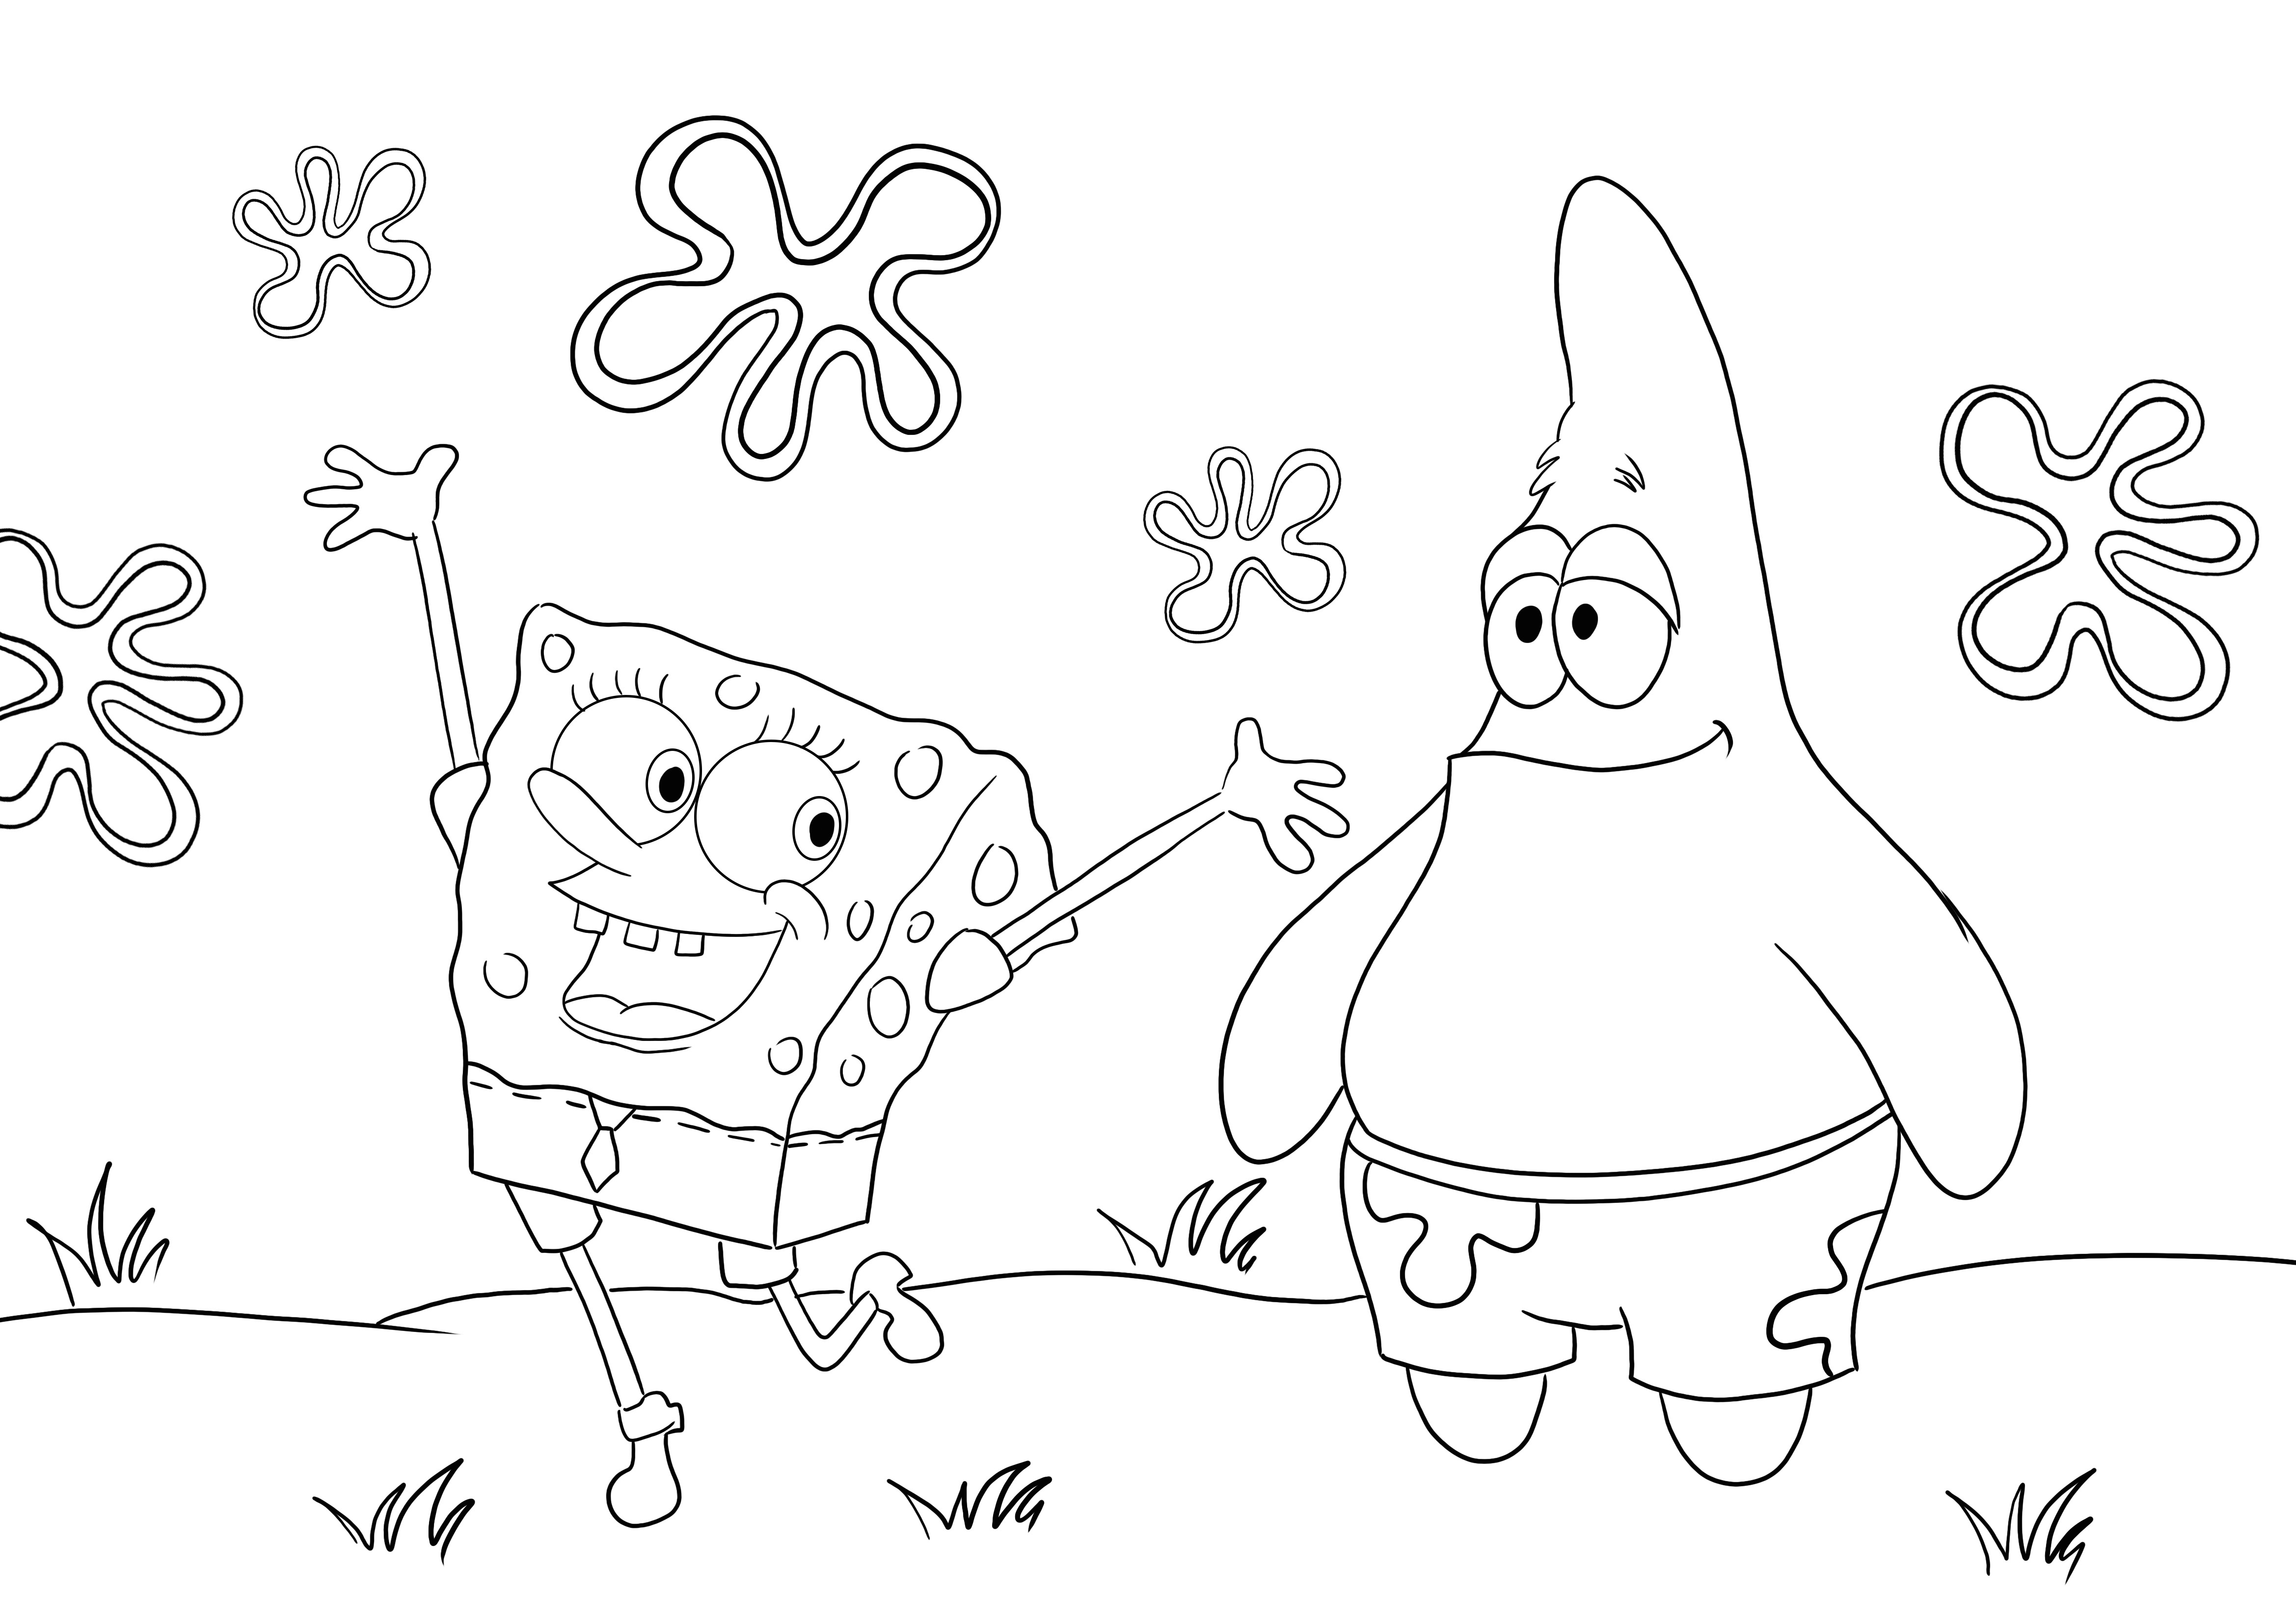 Happy Sponge Kanciastoporty i jego kumpel Patrick za darmo do kolorowania i drukowania